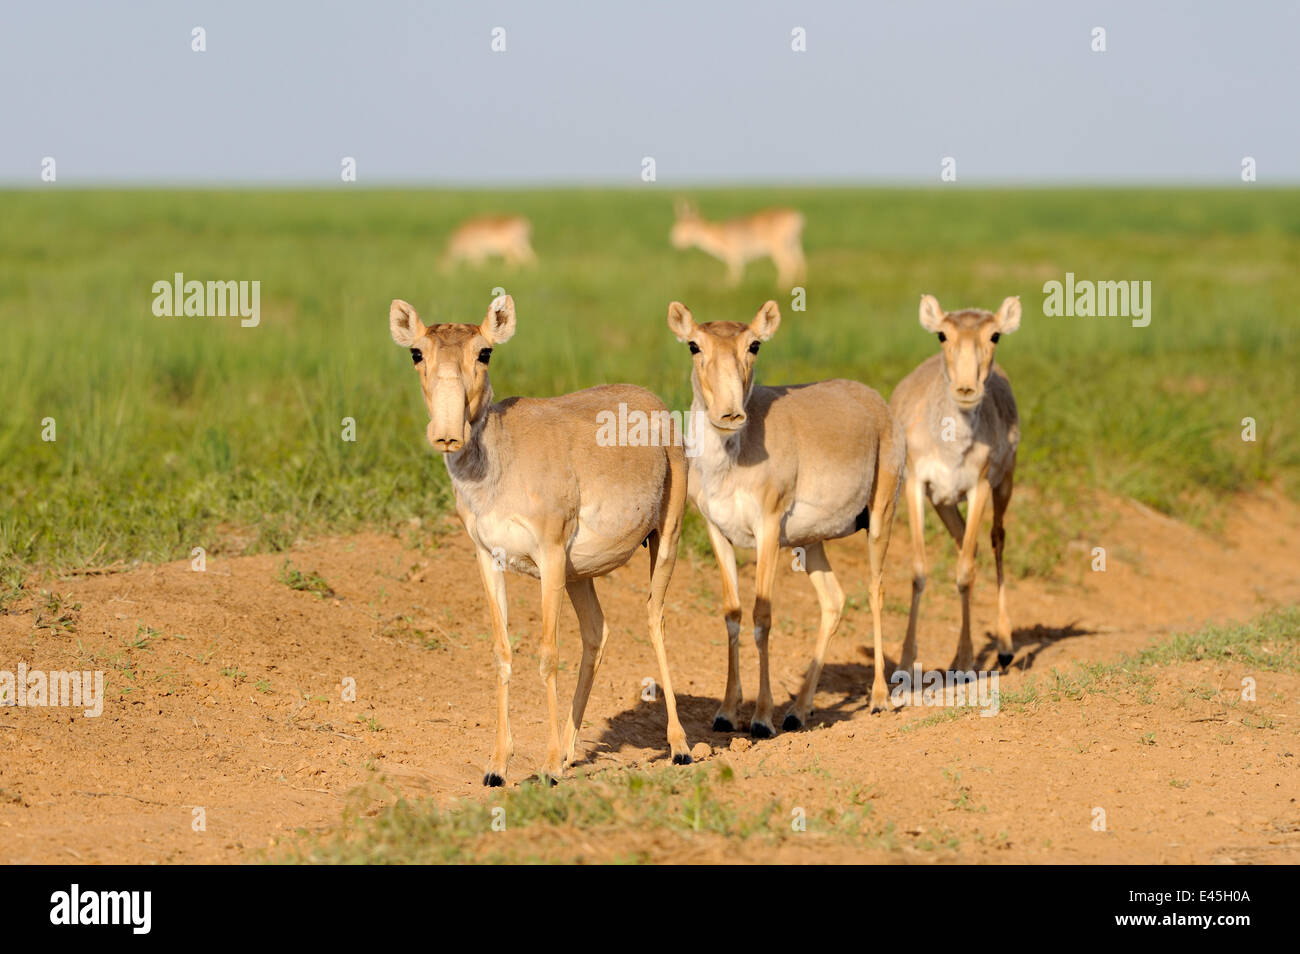 Trois femmes les antilopes Saïga (Saiga tatarica) Cherniye zemli (terre noire), Réserve naturelle de Kalmoukie, en Russie, en mai 2009 Banque D'Images